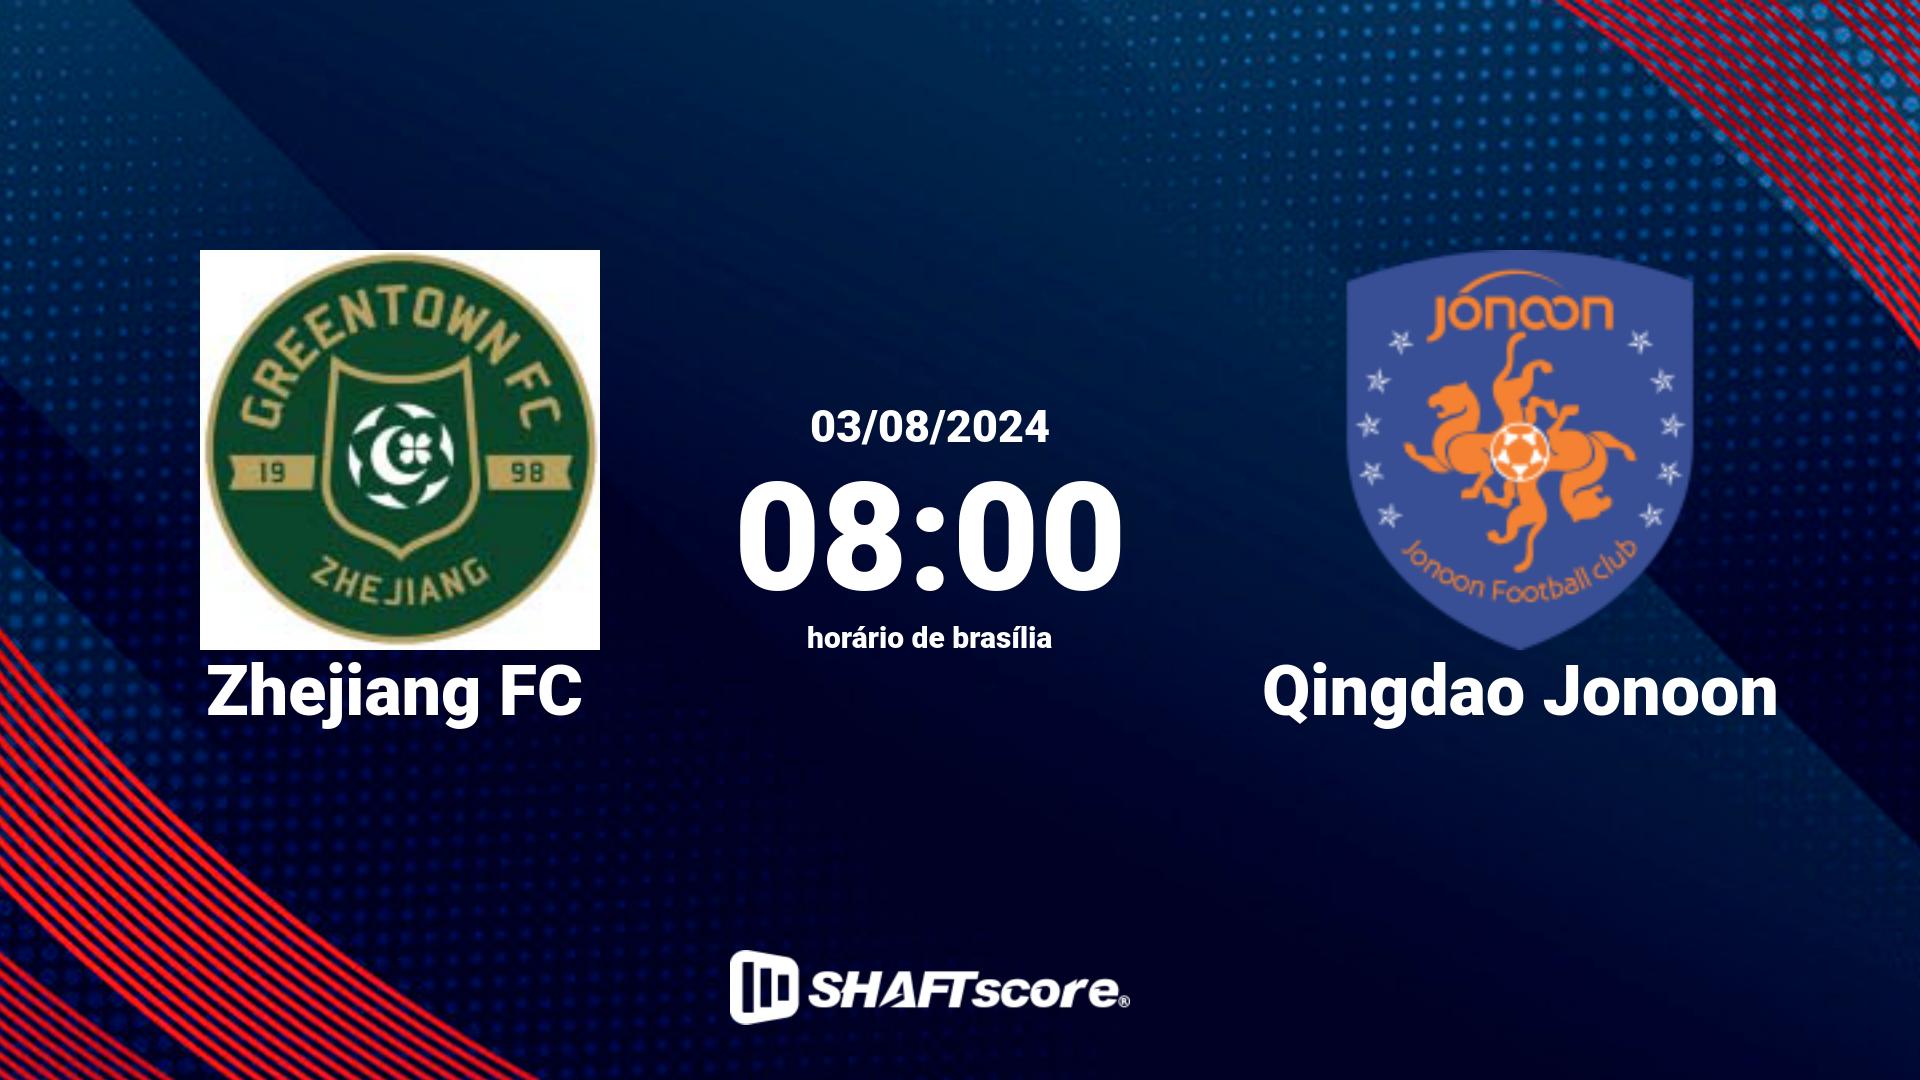 Estatísticas do jogo Zhejiang FC vs Qingdao Jonoon 03.08 08:00